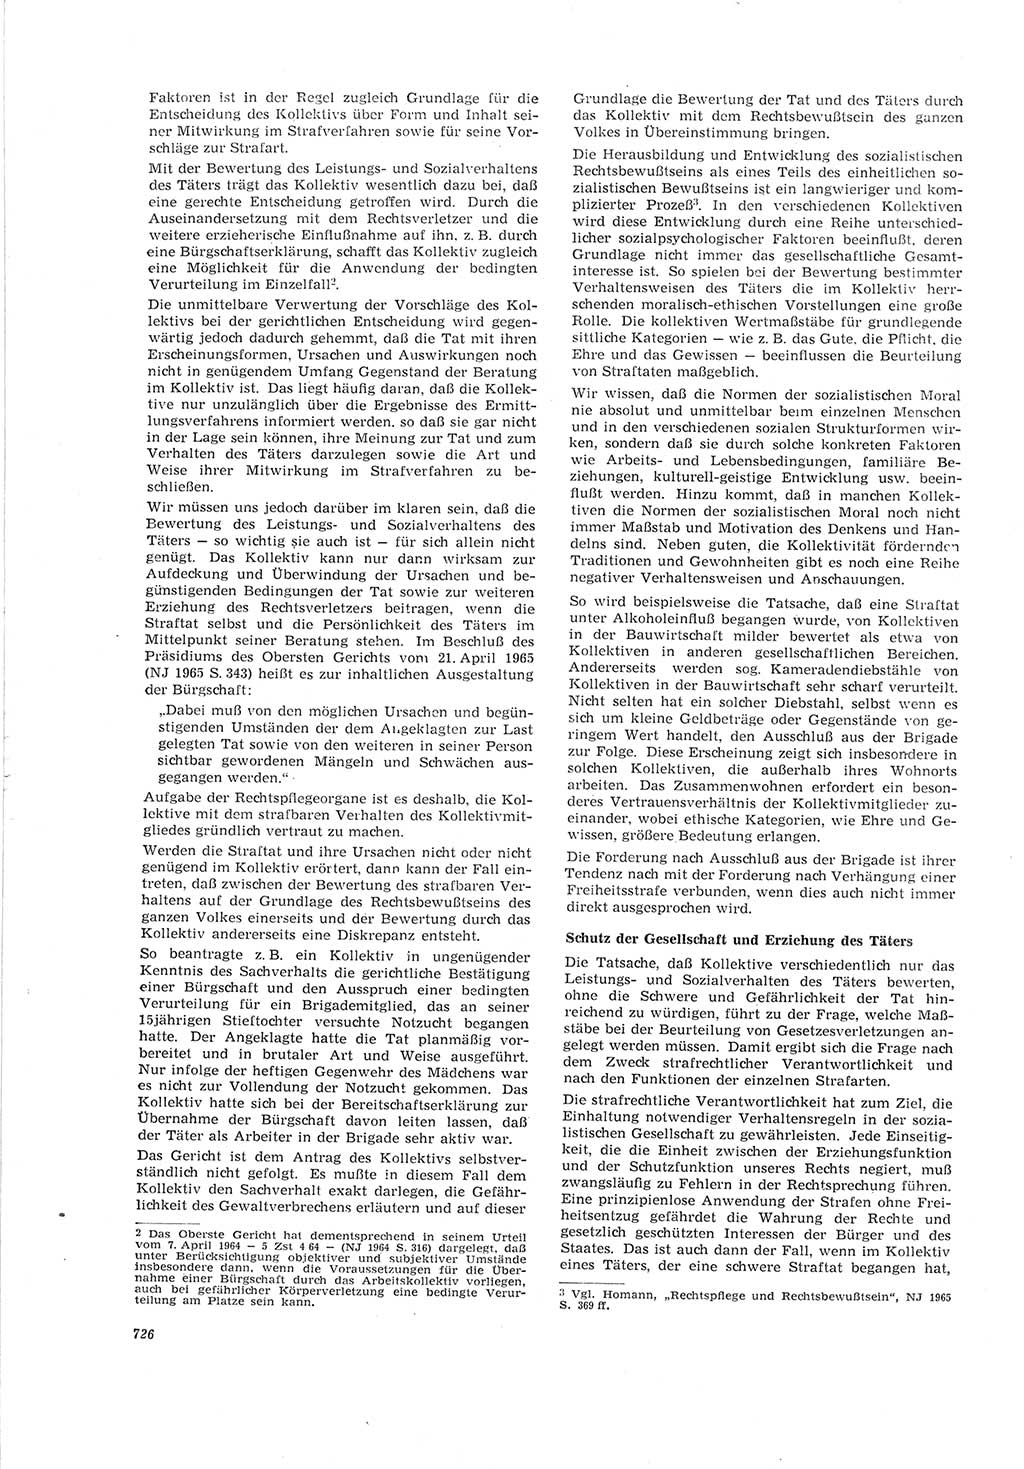 Neue Justiz (NJ), Zeitschrift für Recht und Rechtswissenschaft [Deutsche Demokratische Republik (DDR)], 19. Jahrgang 1965, Seite 726 (NJ DDR 1965, S. 726)